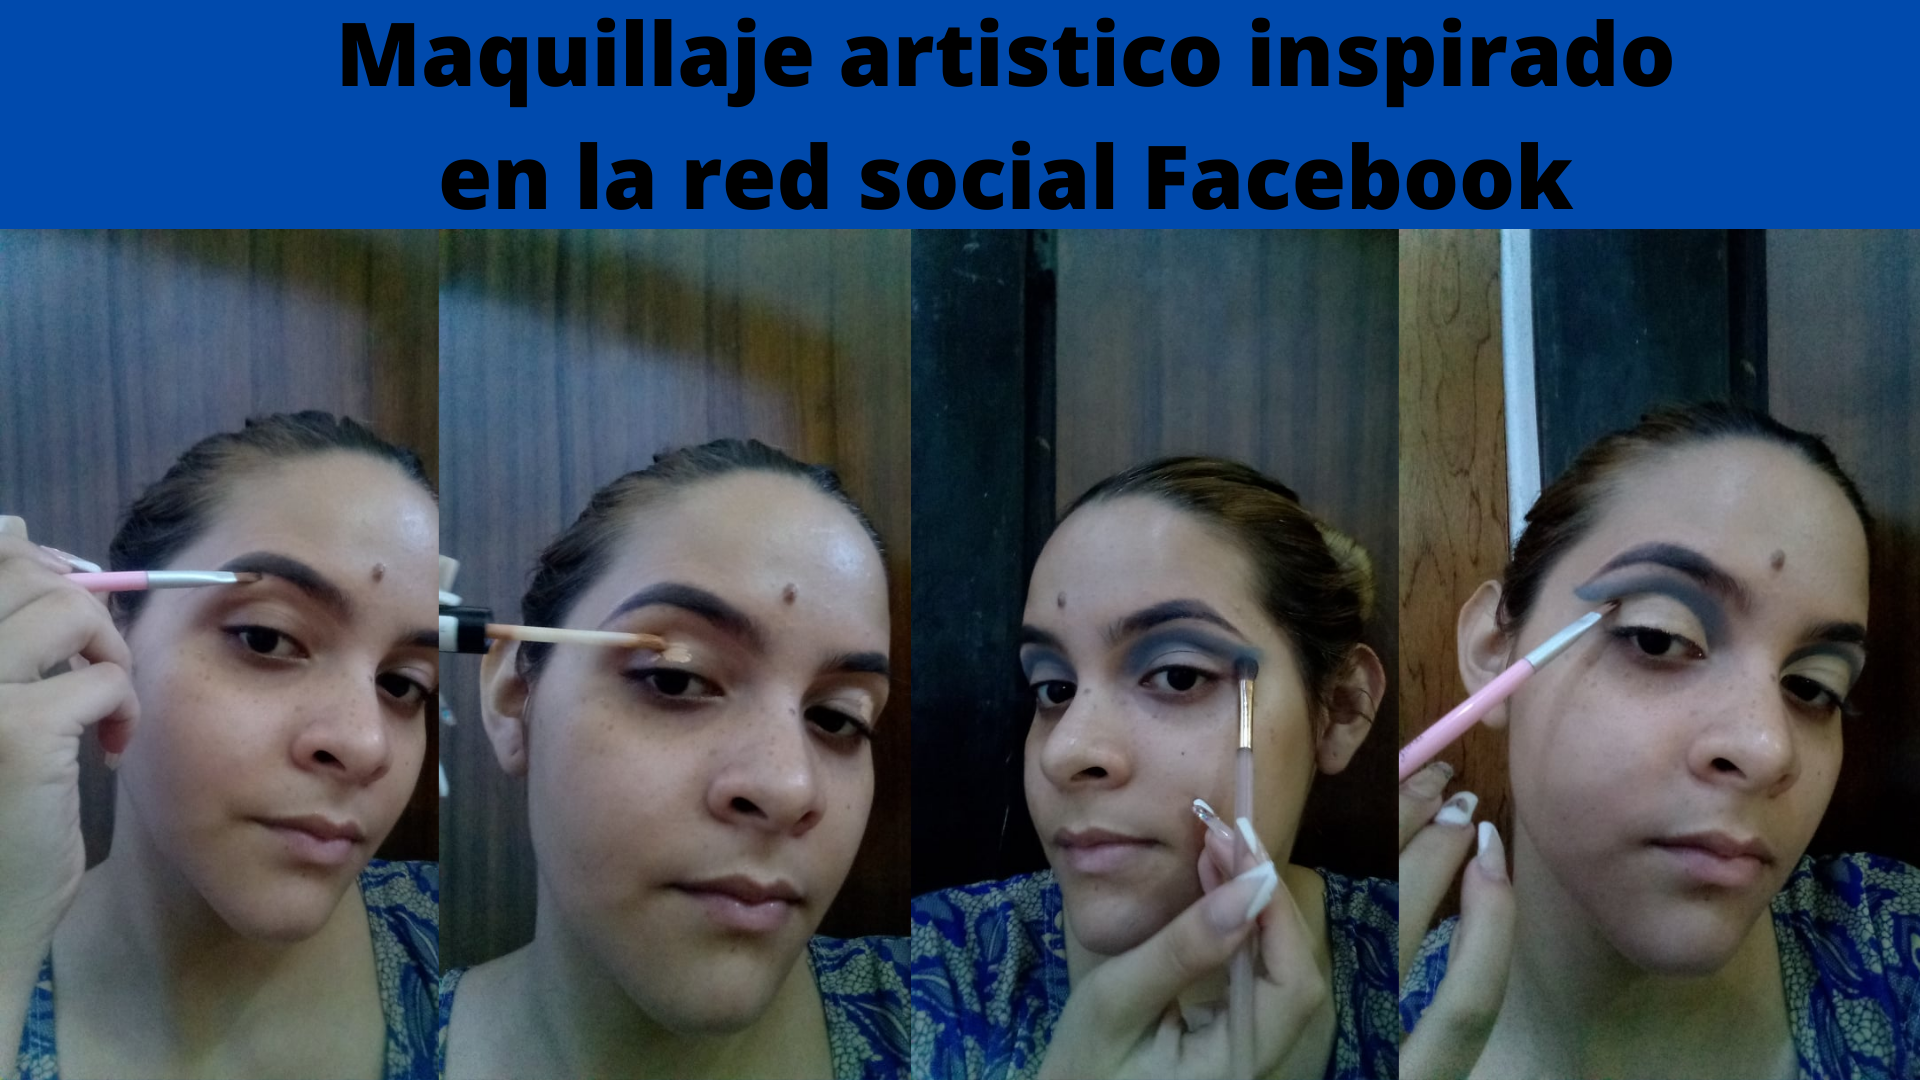 Maquillaje artistico inspirado en la red social Facebook (1).png